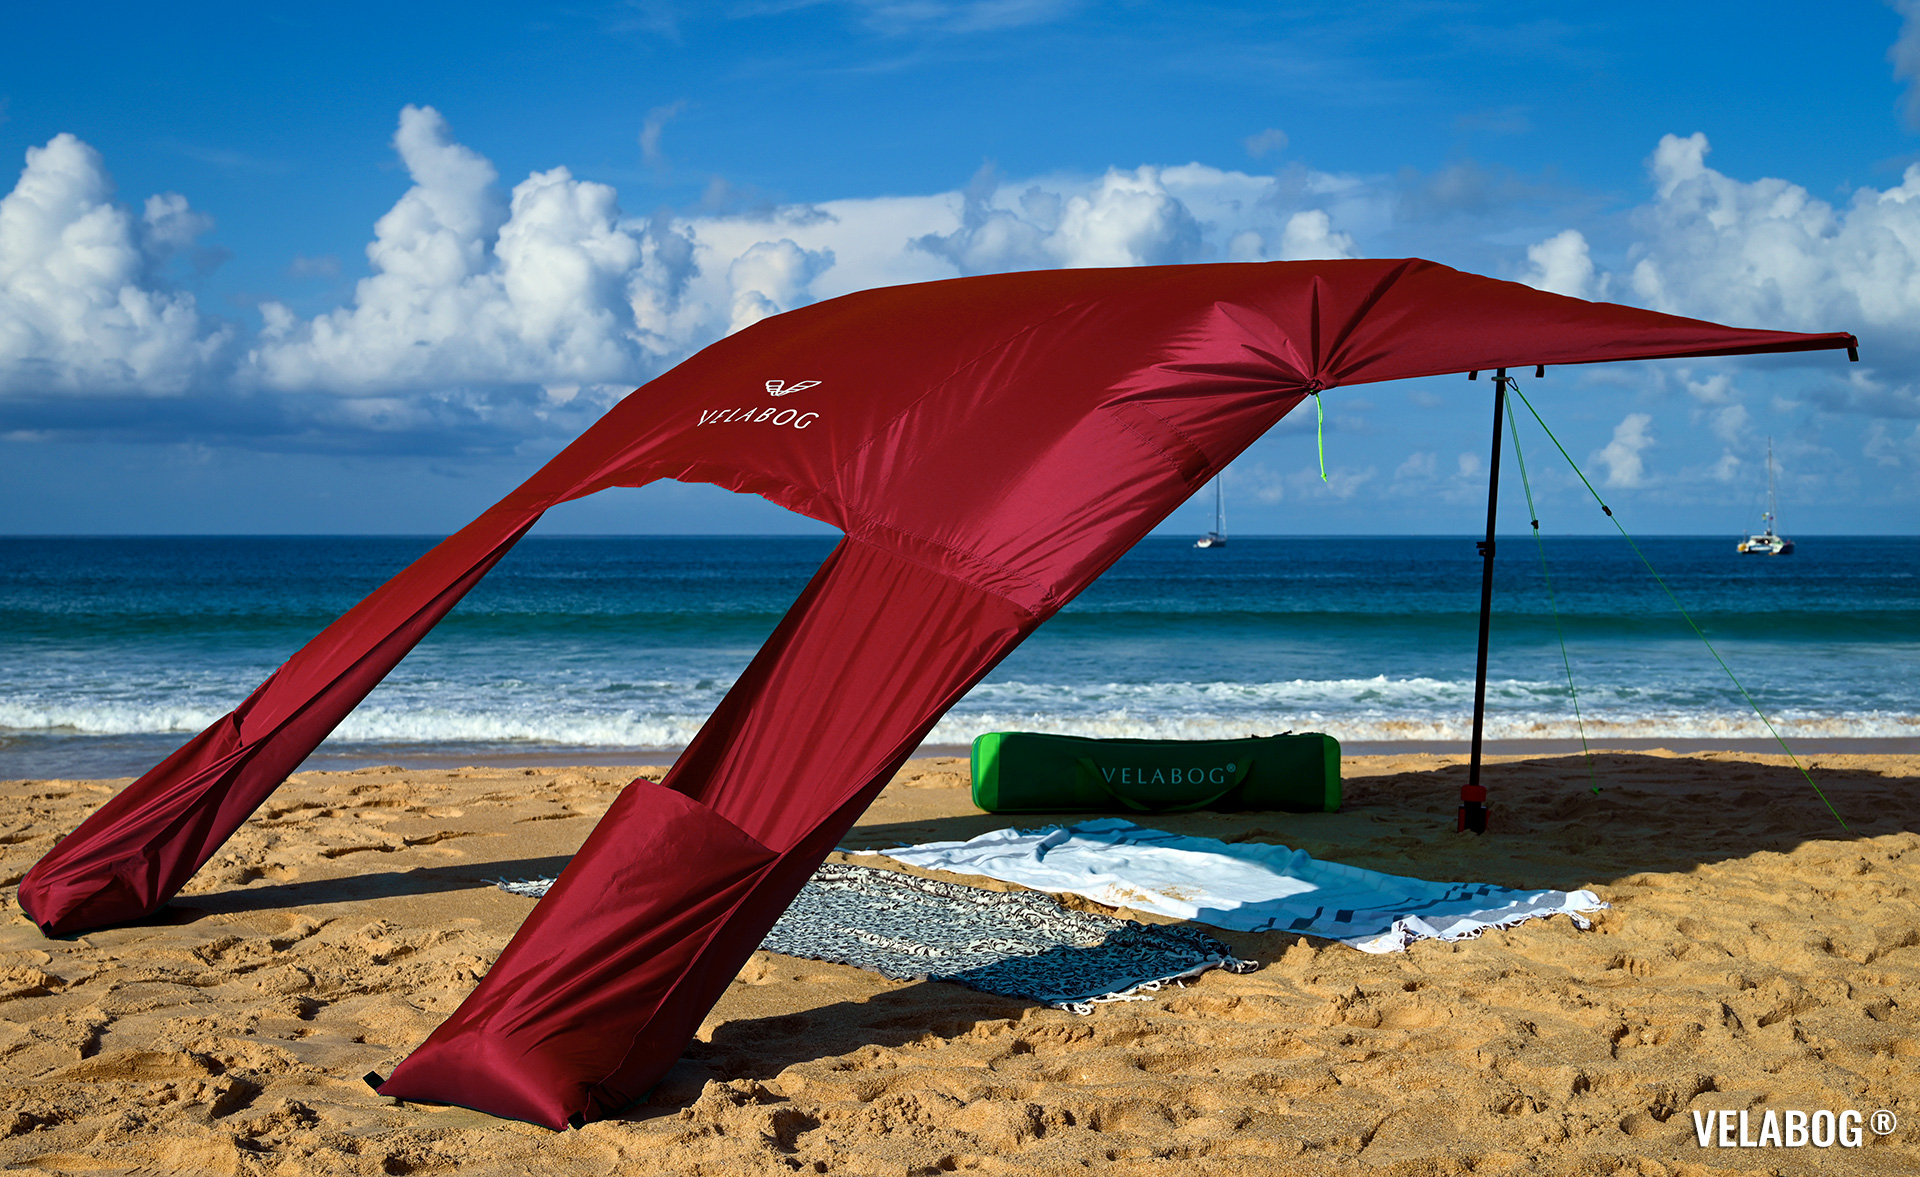 Strand Sonnensegel Strandzelt Velabog Breeze. Aufbauoption A - leichter bis starker Wind. Farbe: rot. Bester Sonnenschutz Strand. | Velabog ©